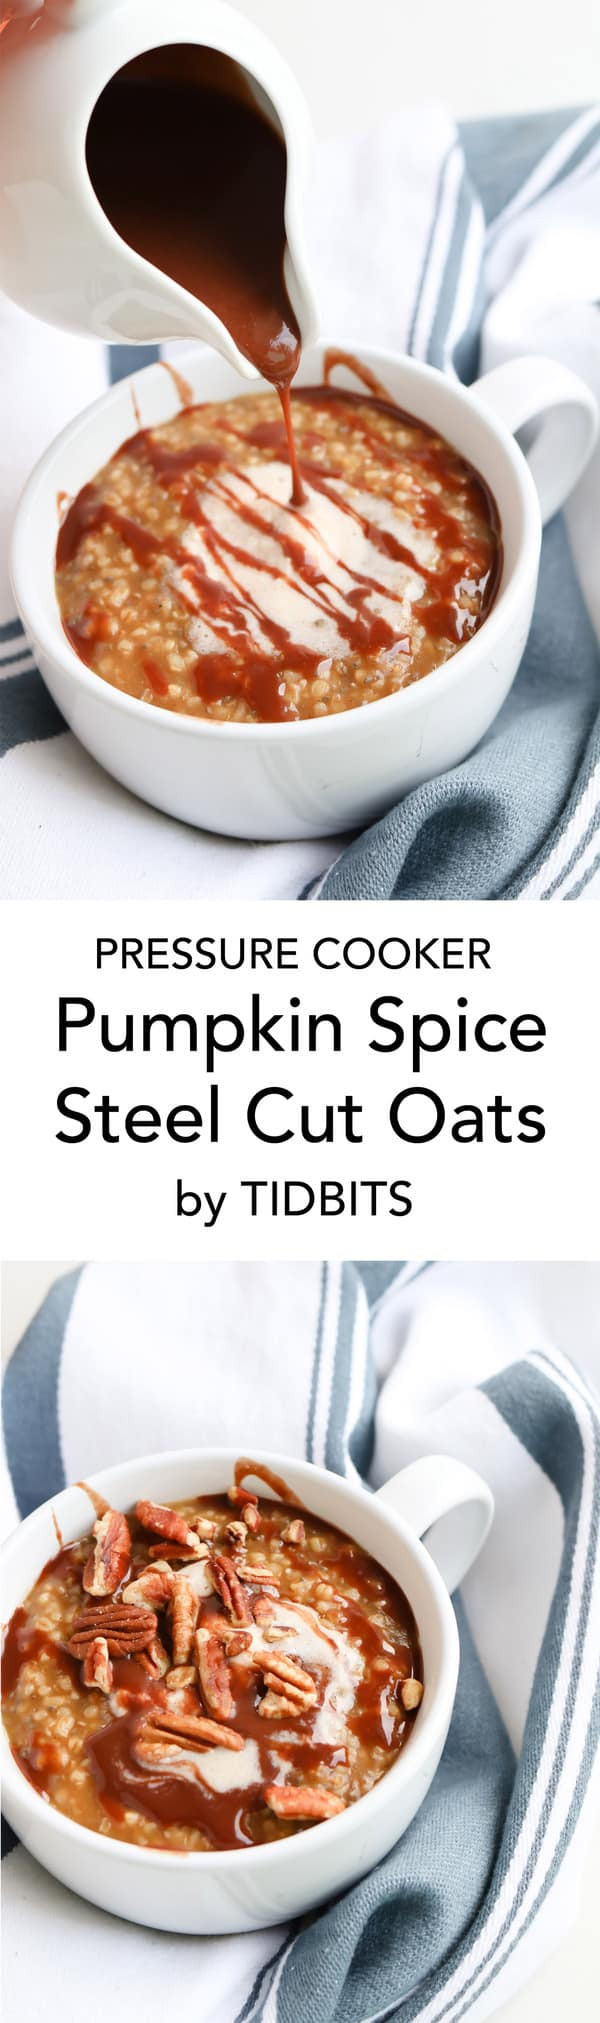 Steel Cut Oats In Pressure Cooker
 Pressure Cooker Pumpkin Spice Steel Cut Oats with